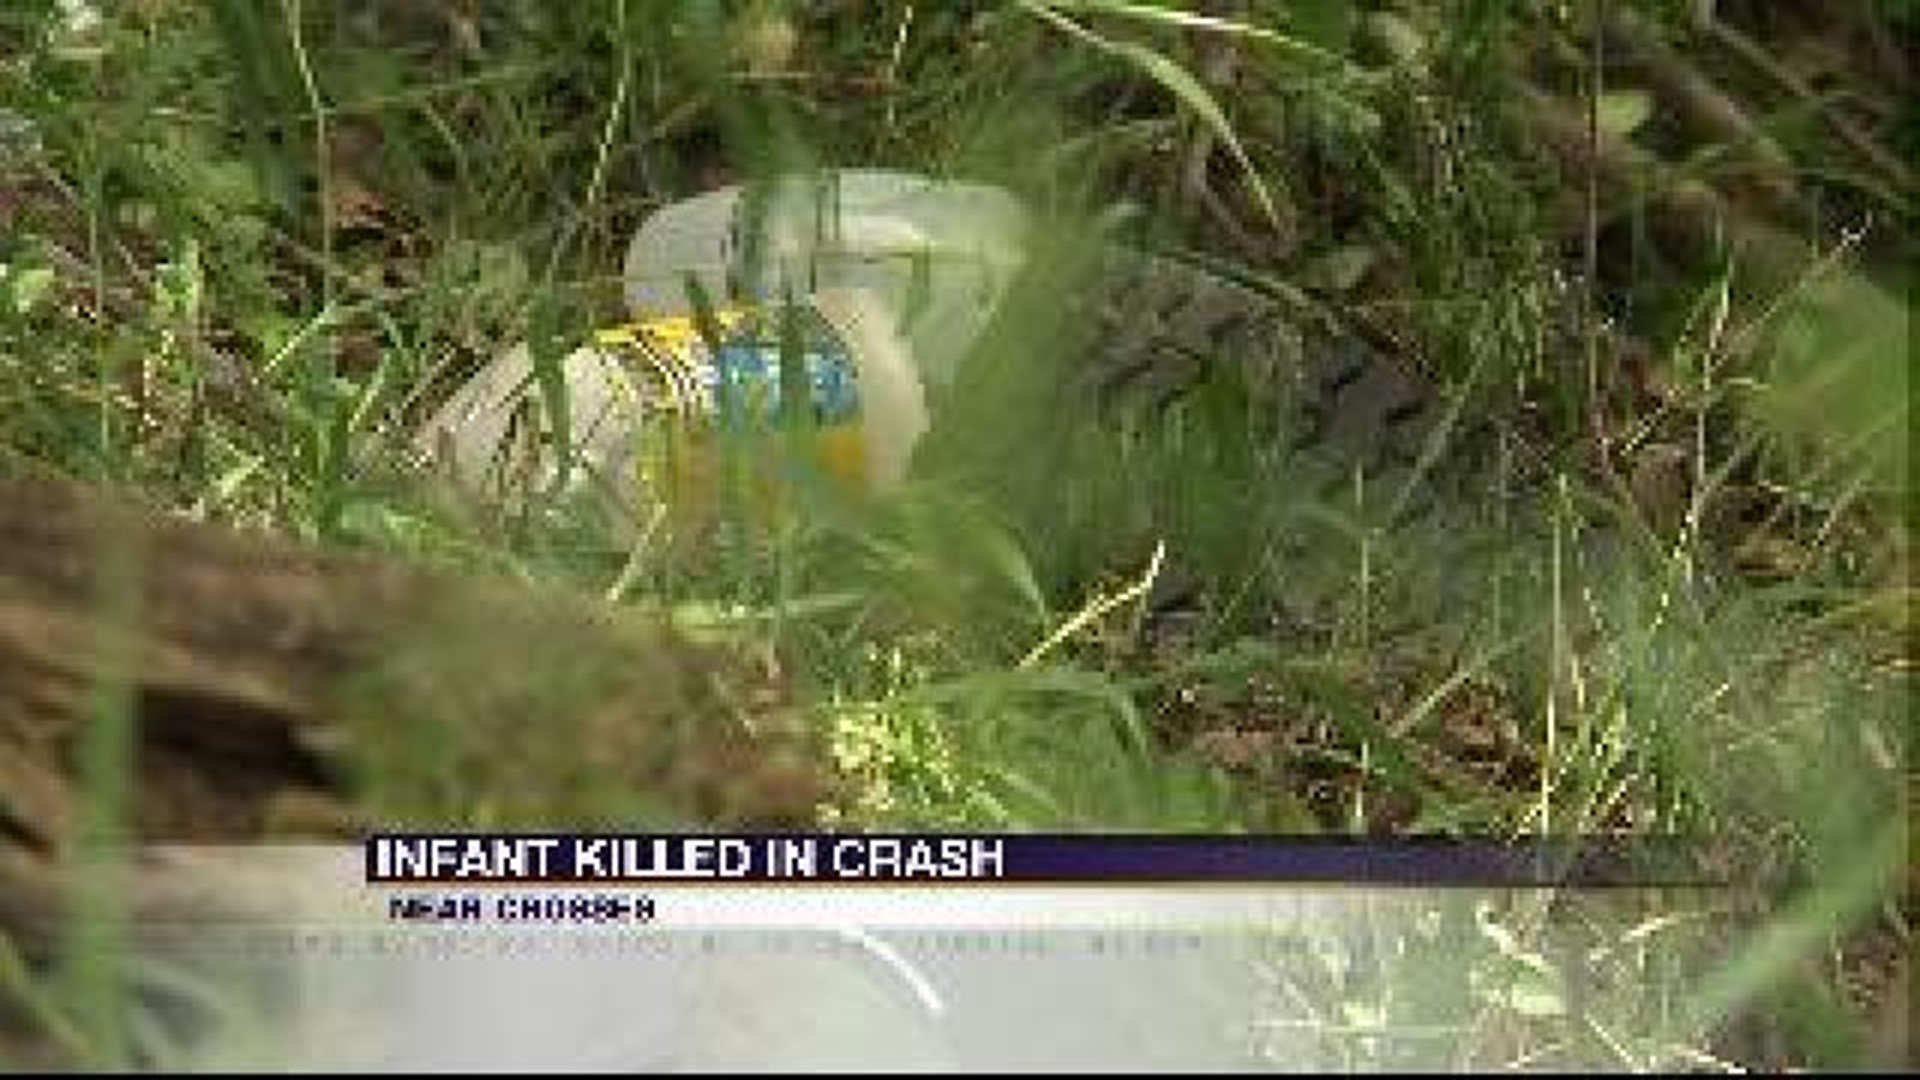 Baby Killed in Crash